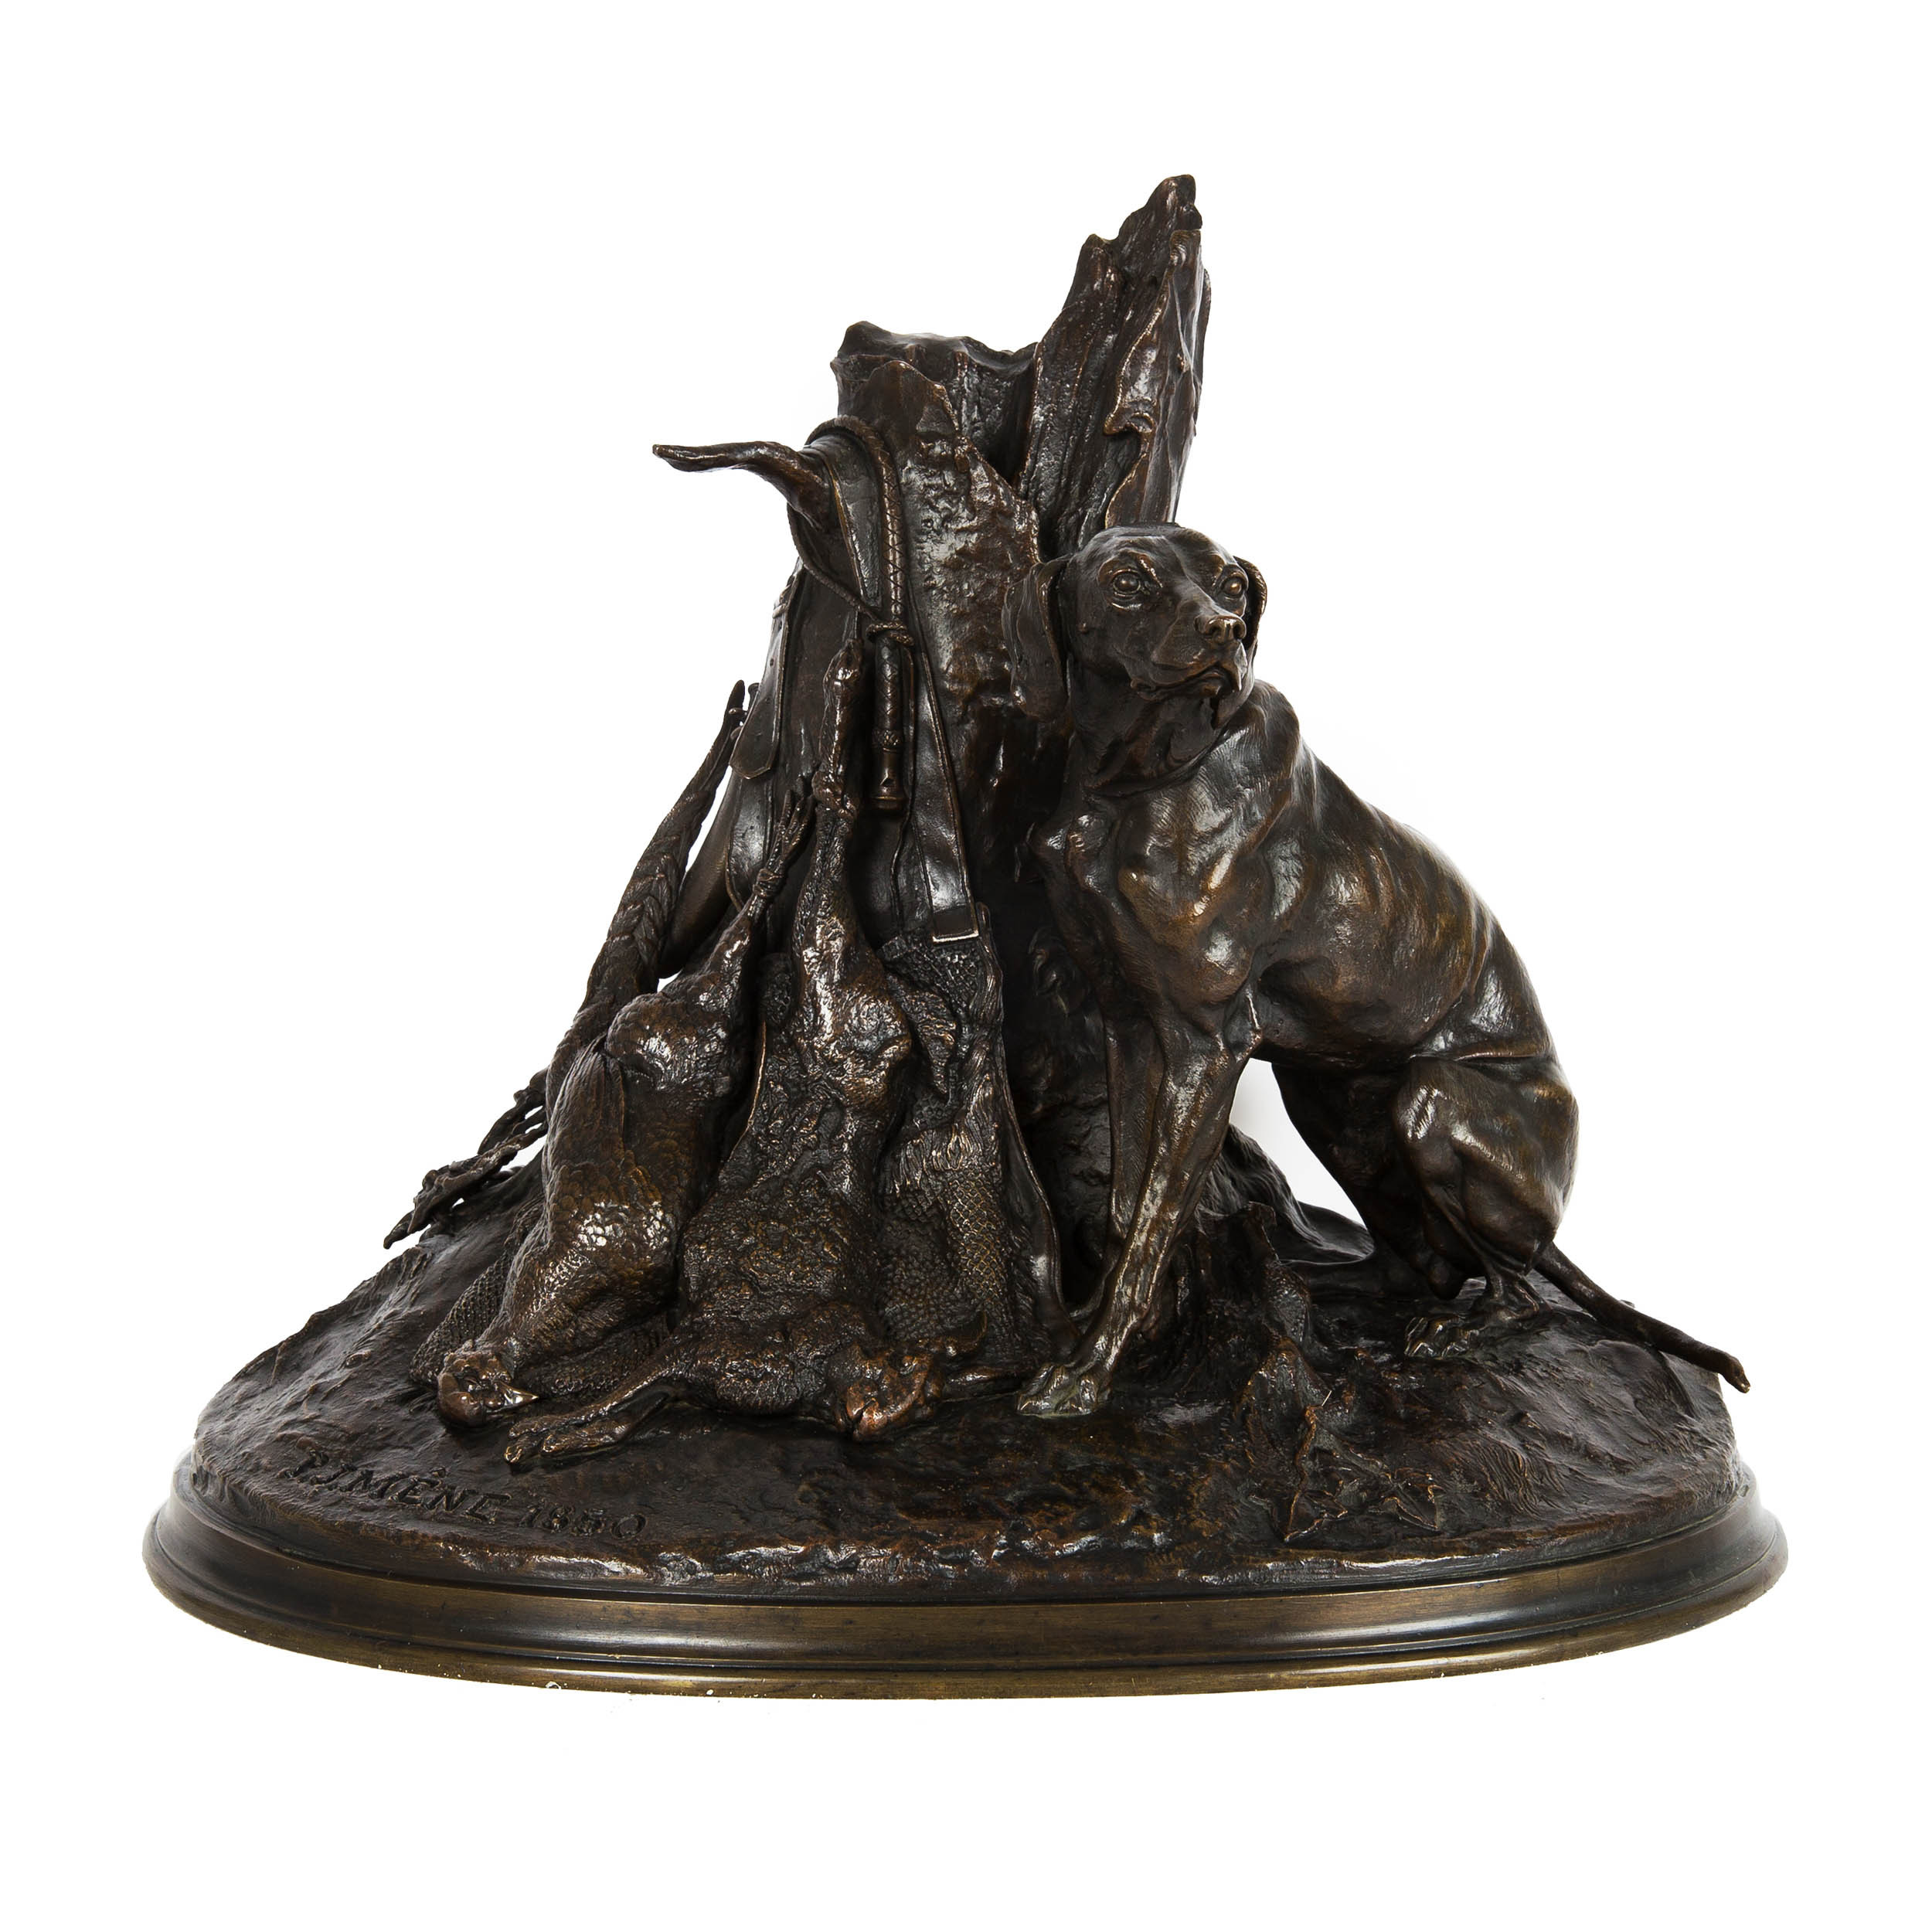 Hound Sculpture